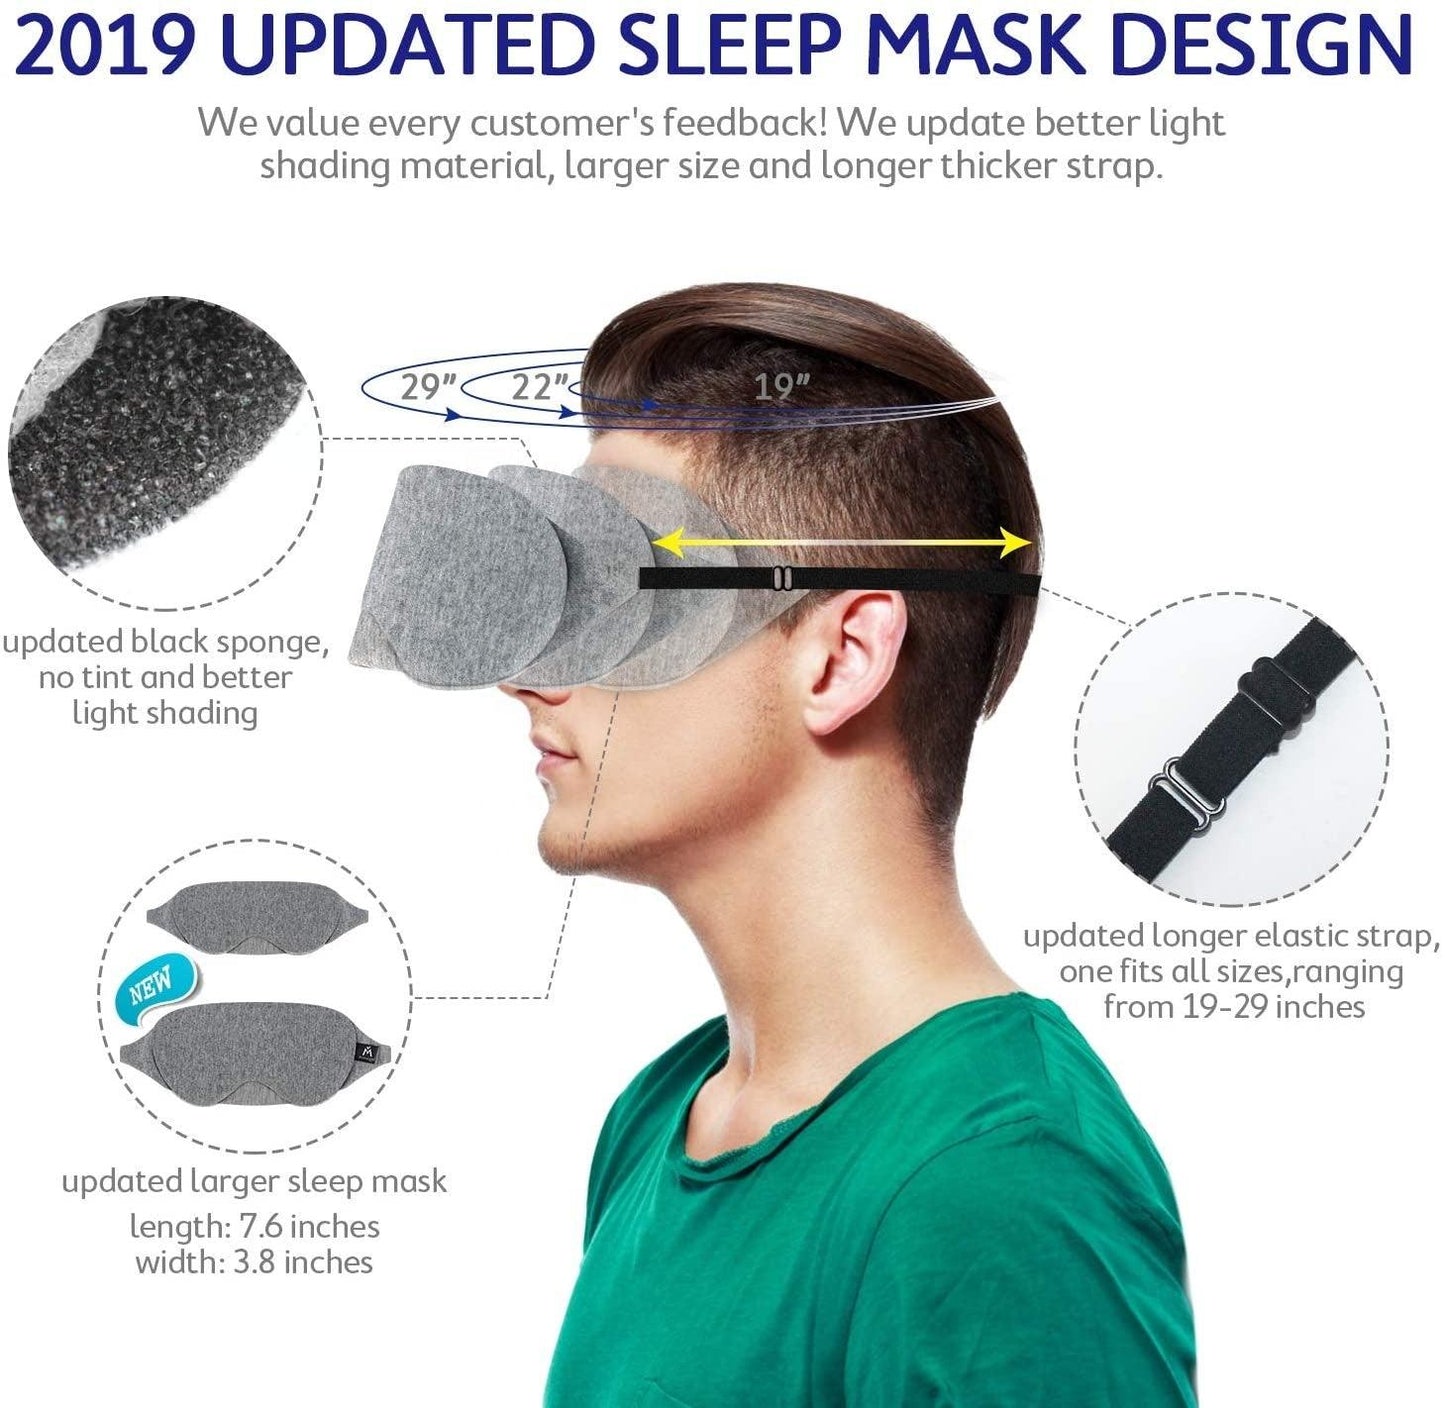  Sleep Mask cashymart